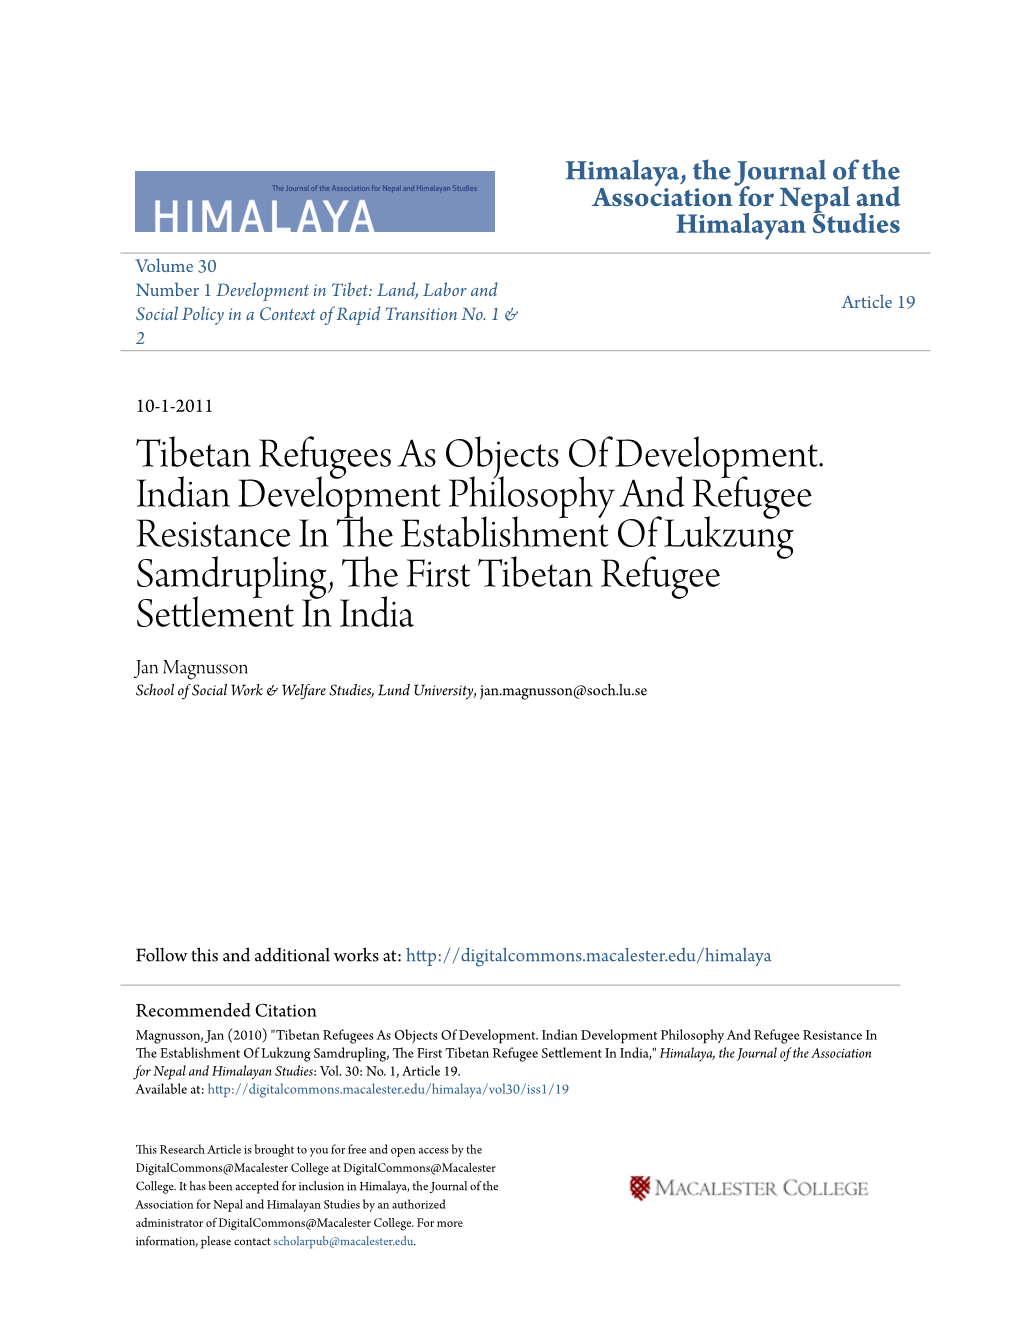 Tibetan Refugees As Objects of Development. Indian Development